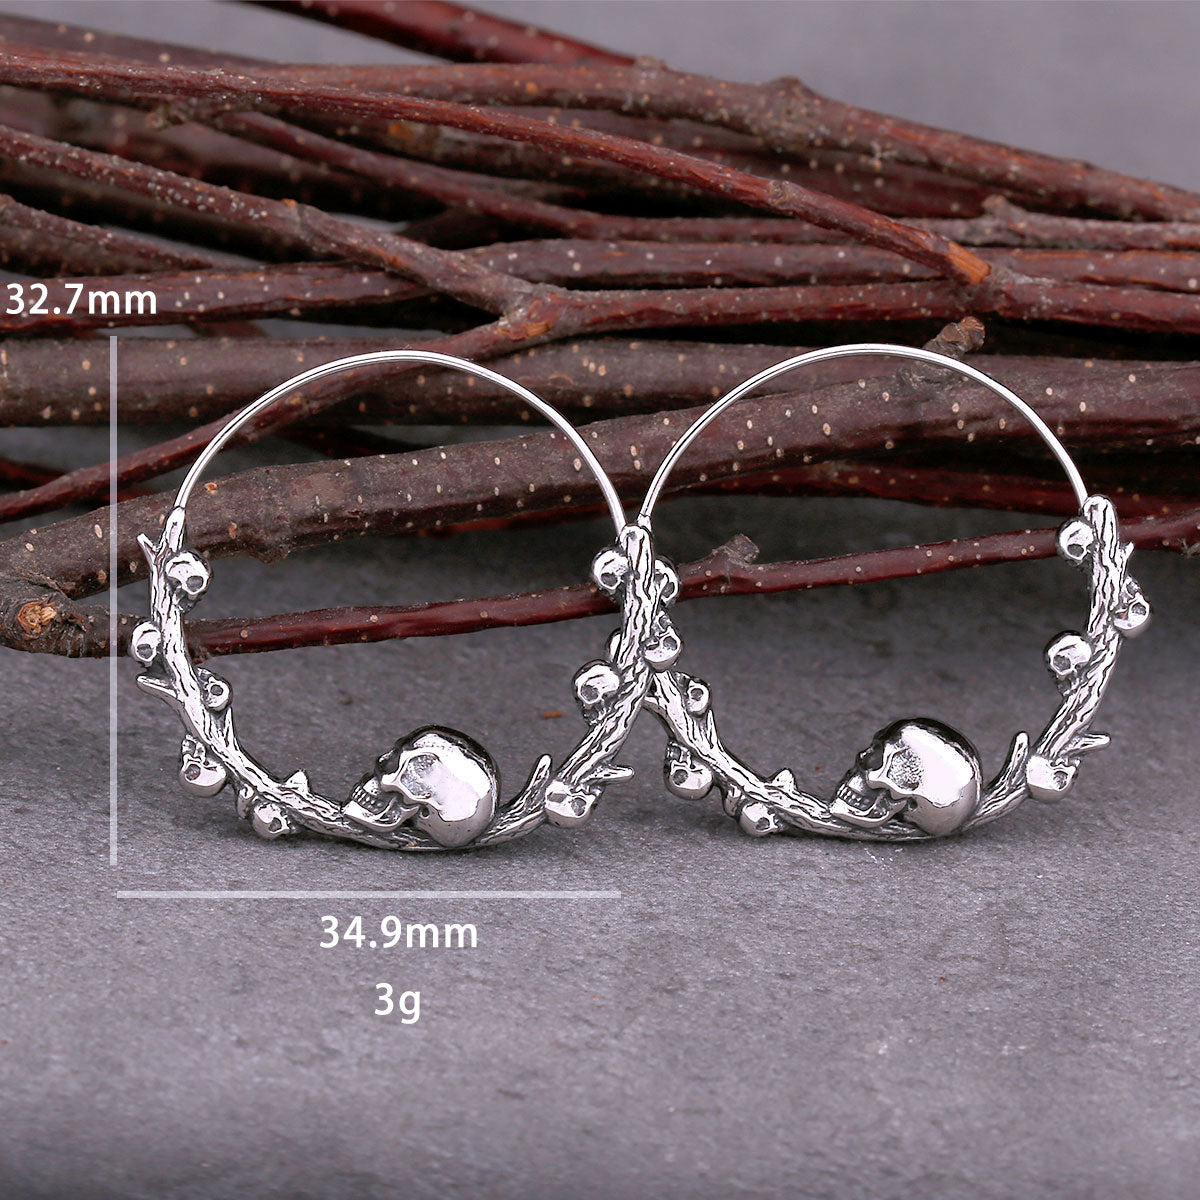 Skull Hoop Earrings - Creative Stainless Steel Jewelry